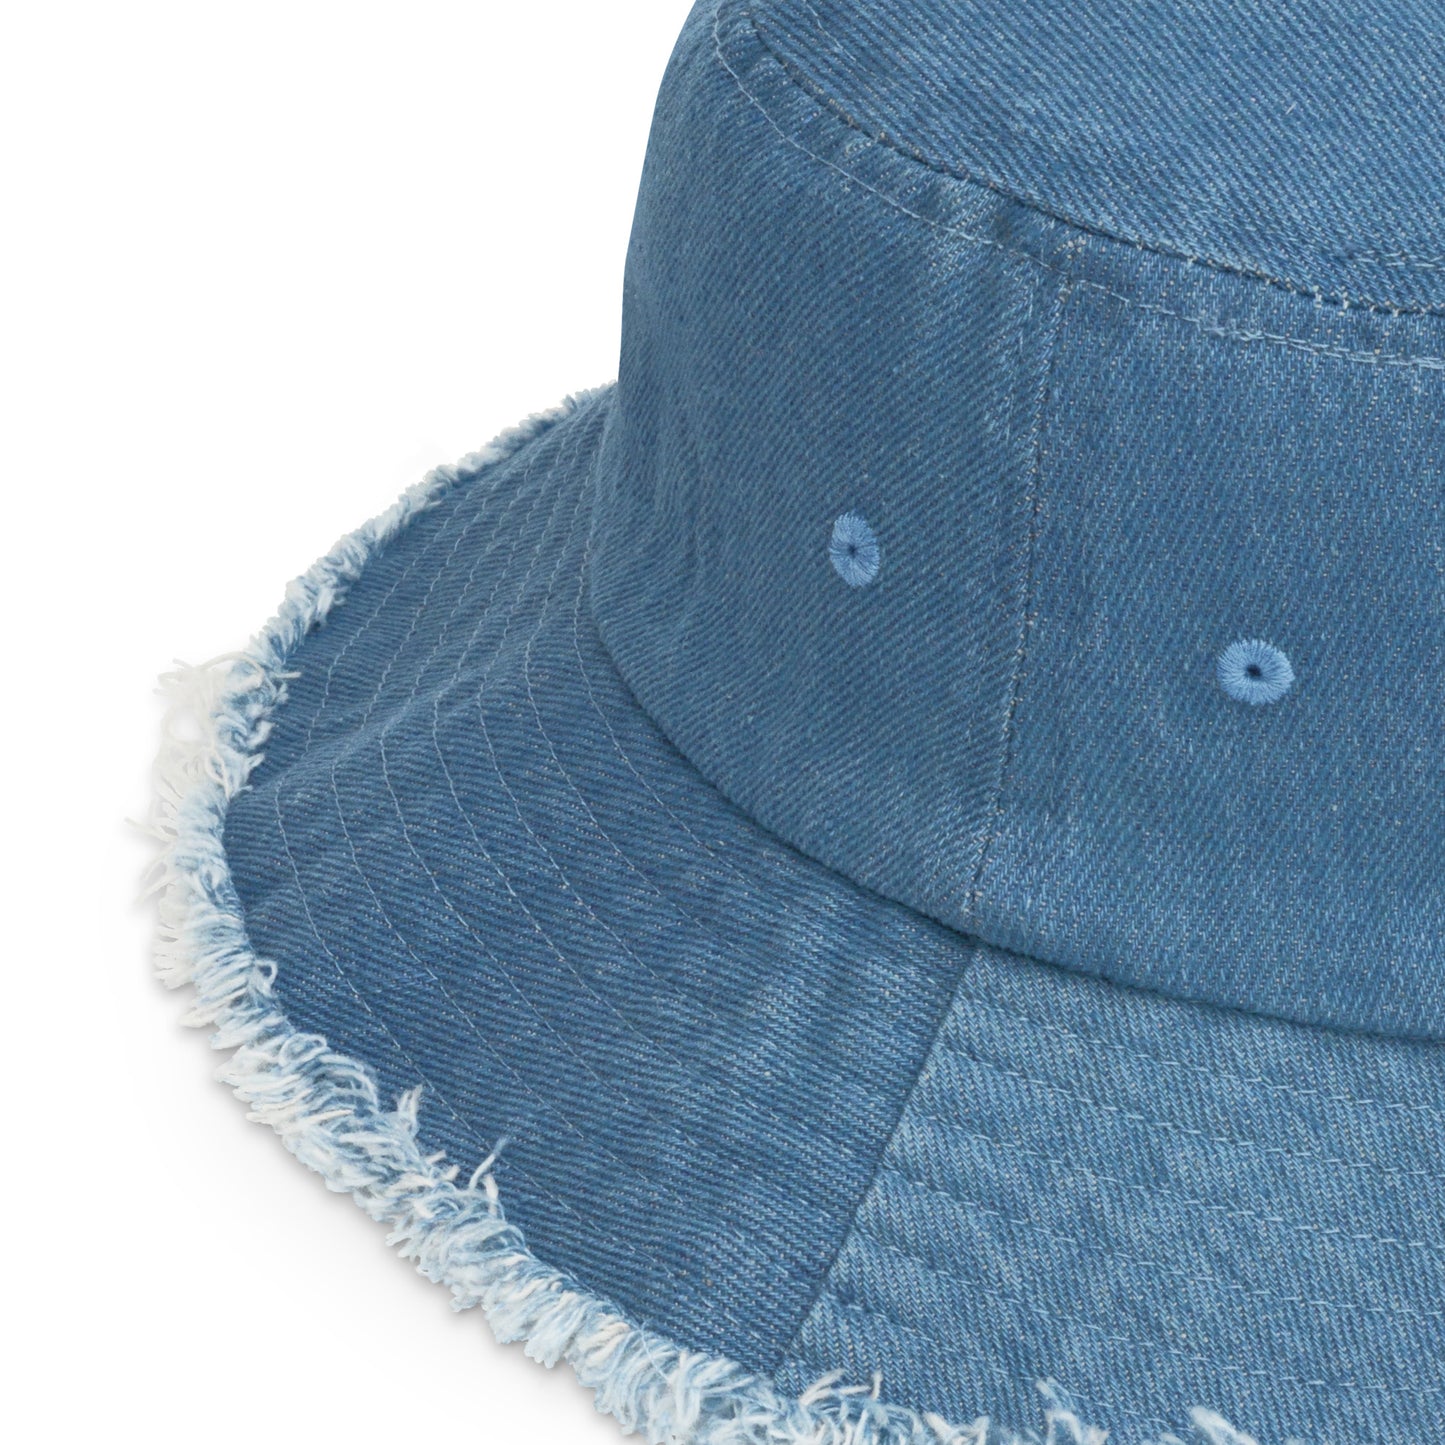 Y005 - Damaged denim bucket hat (Blue)